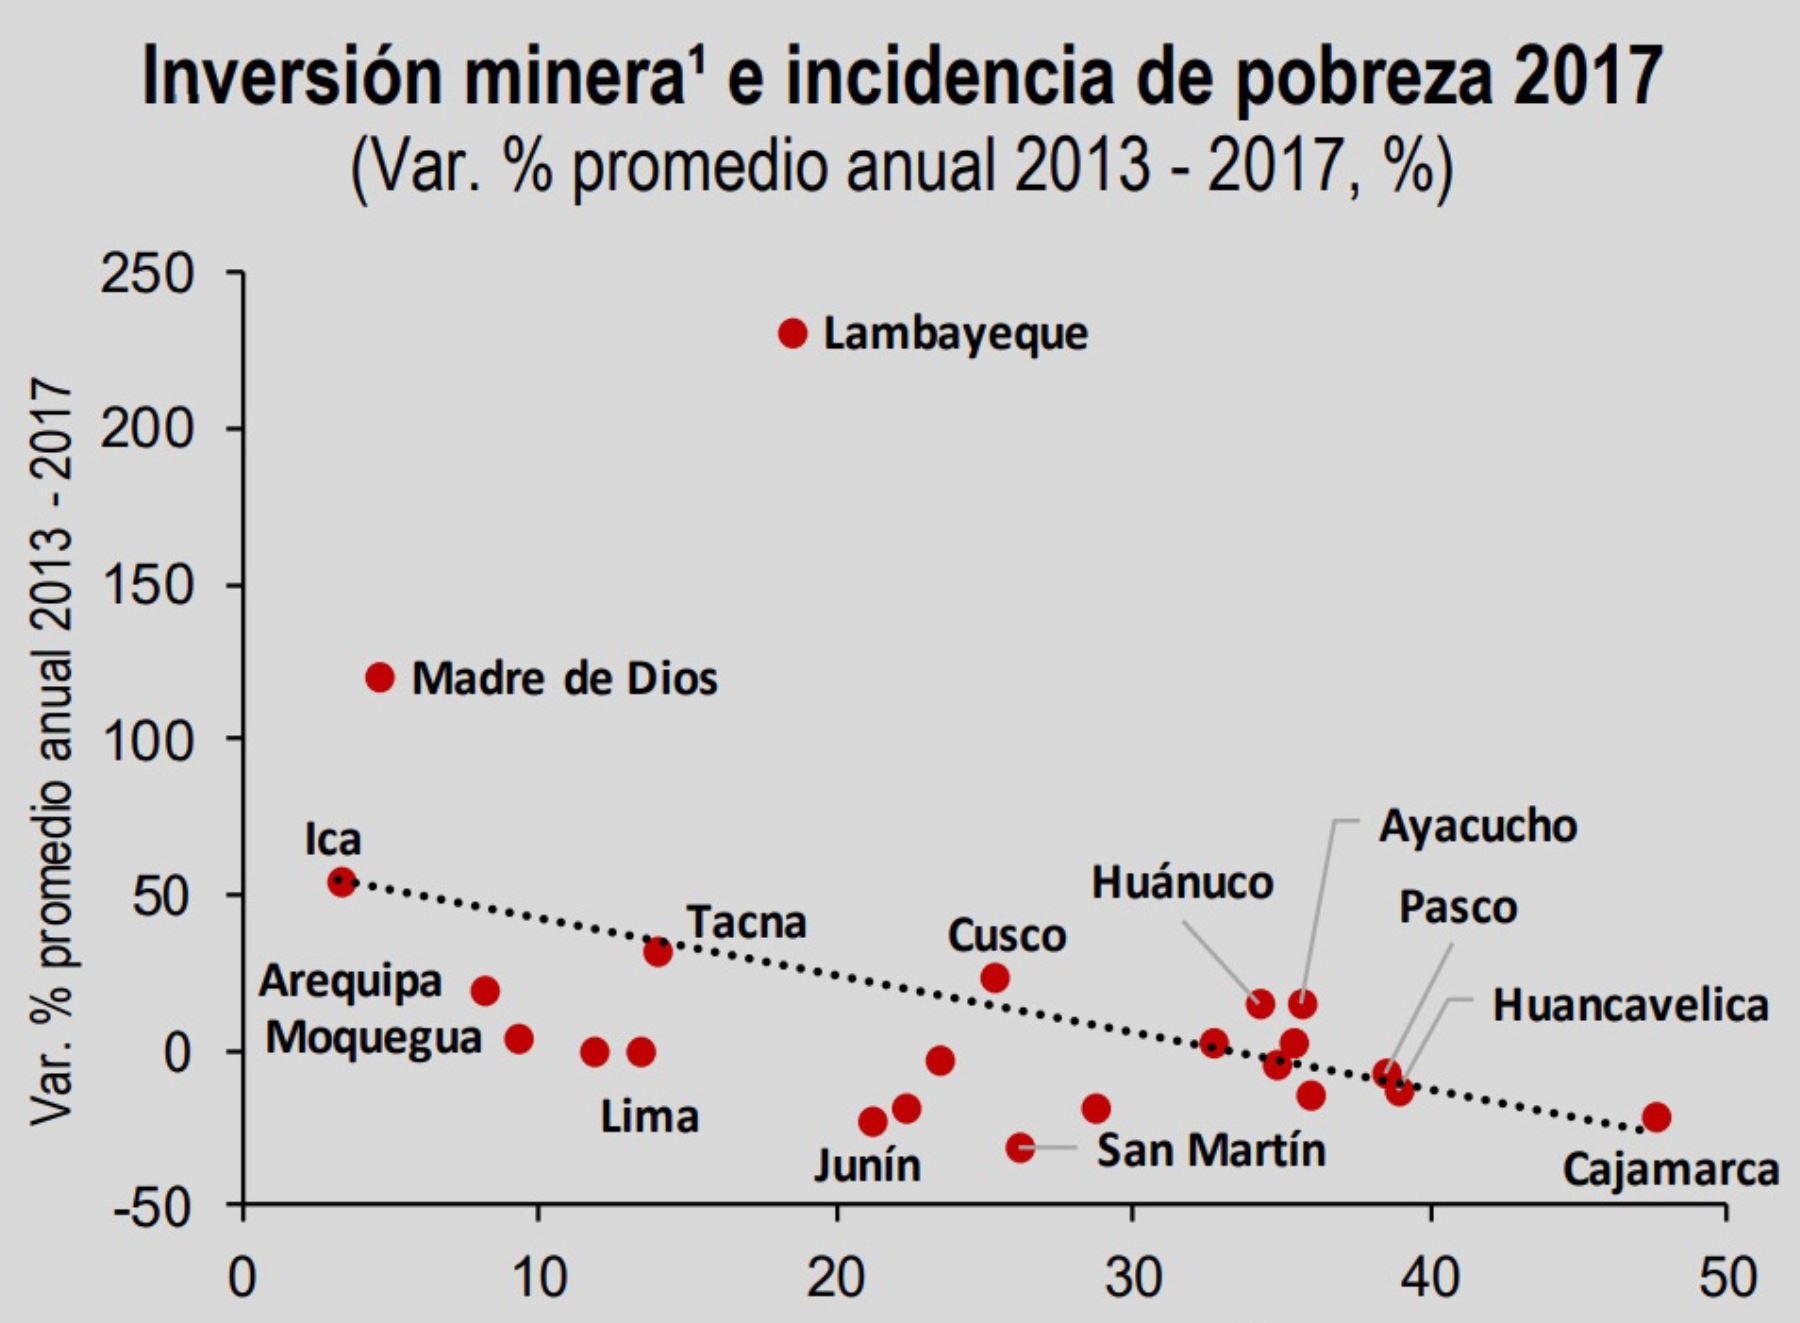 Las regiones que registraron una mayor tasa de crecimiento promedio de la inversión minera entre 2013 y 2017 reportan una menor tasa de pobreza en 2017. Ello puede explicarse por diversos factores como el ingreso por canon minero, la inversión social generada dentro de la región, y la generación de empleos directos e indirectos.